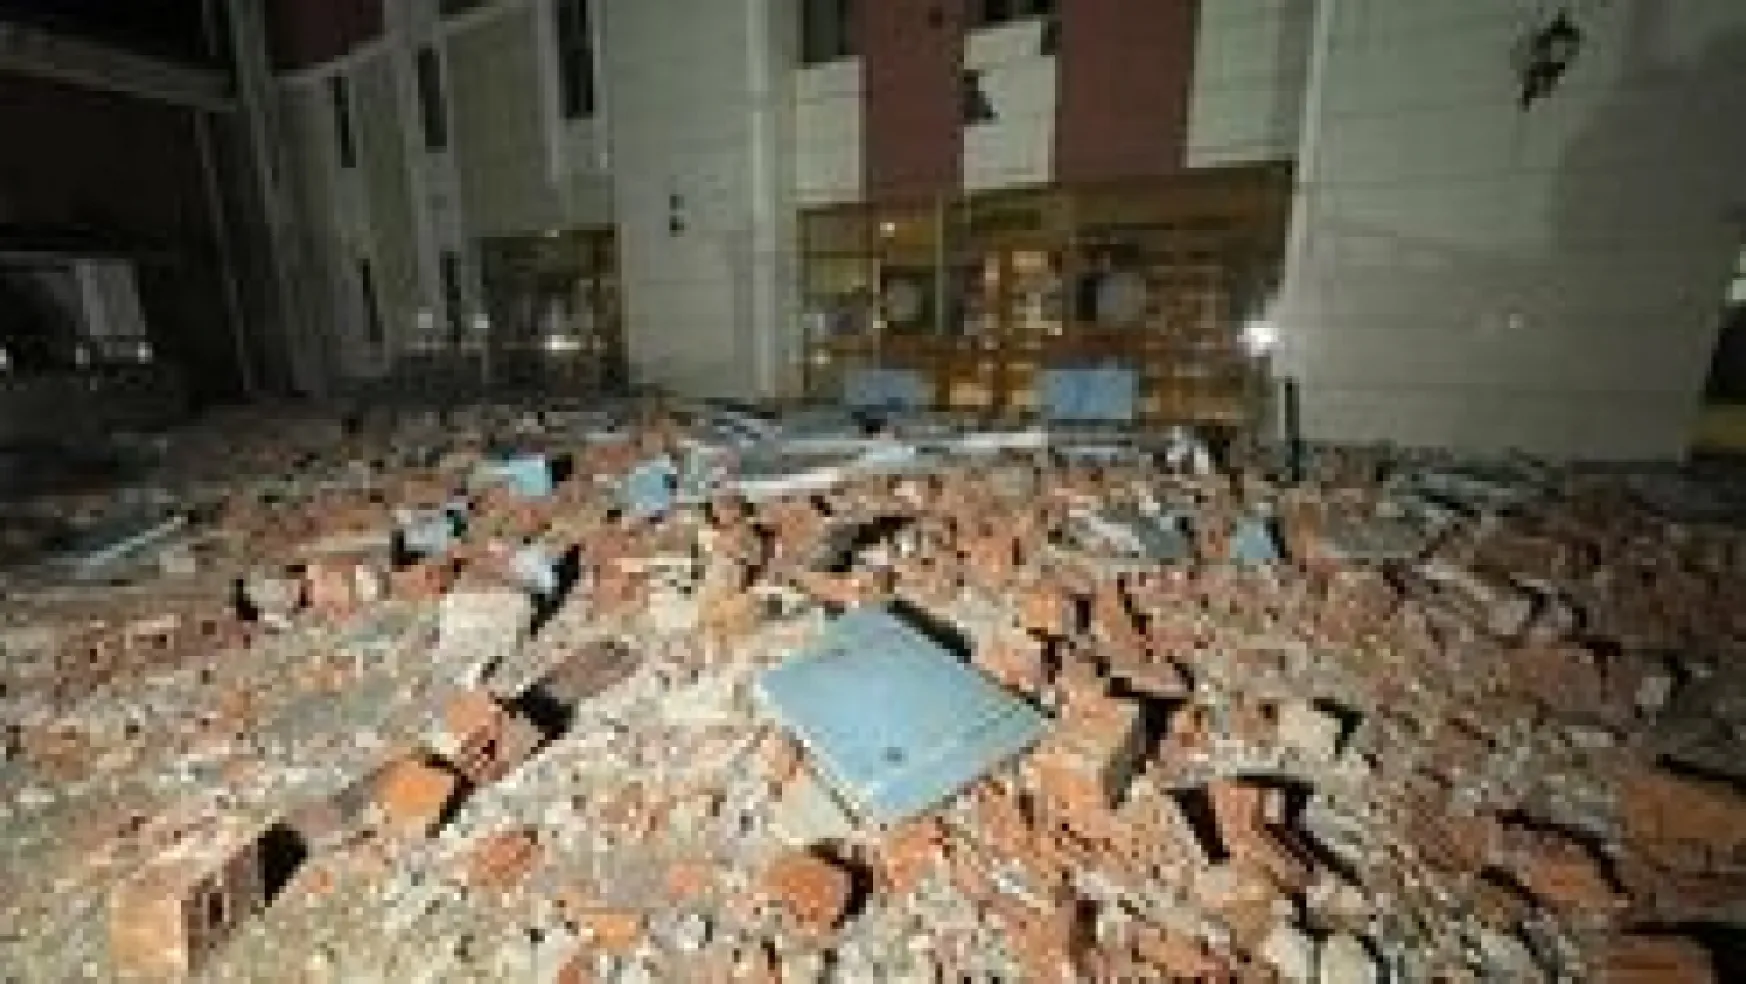 Düzce'de depremin ardından meydana gelen hasar görüntülendi